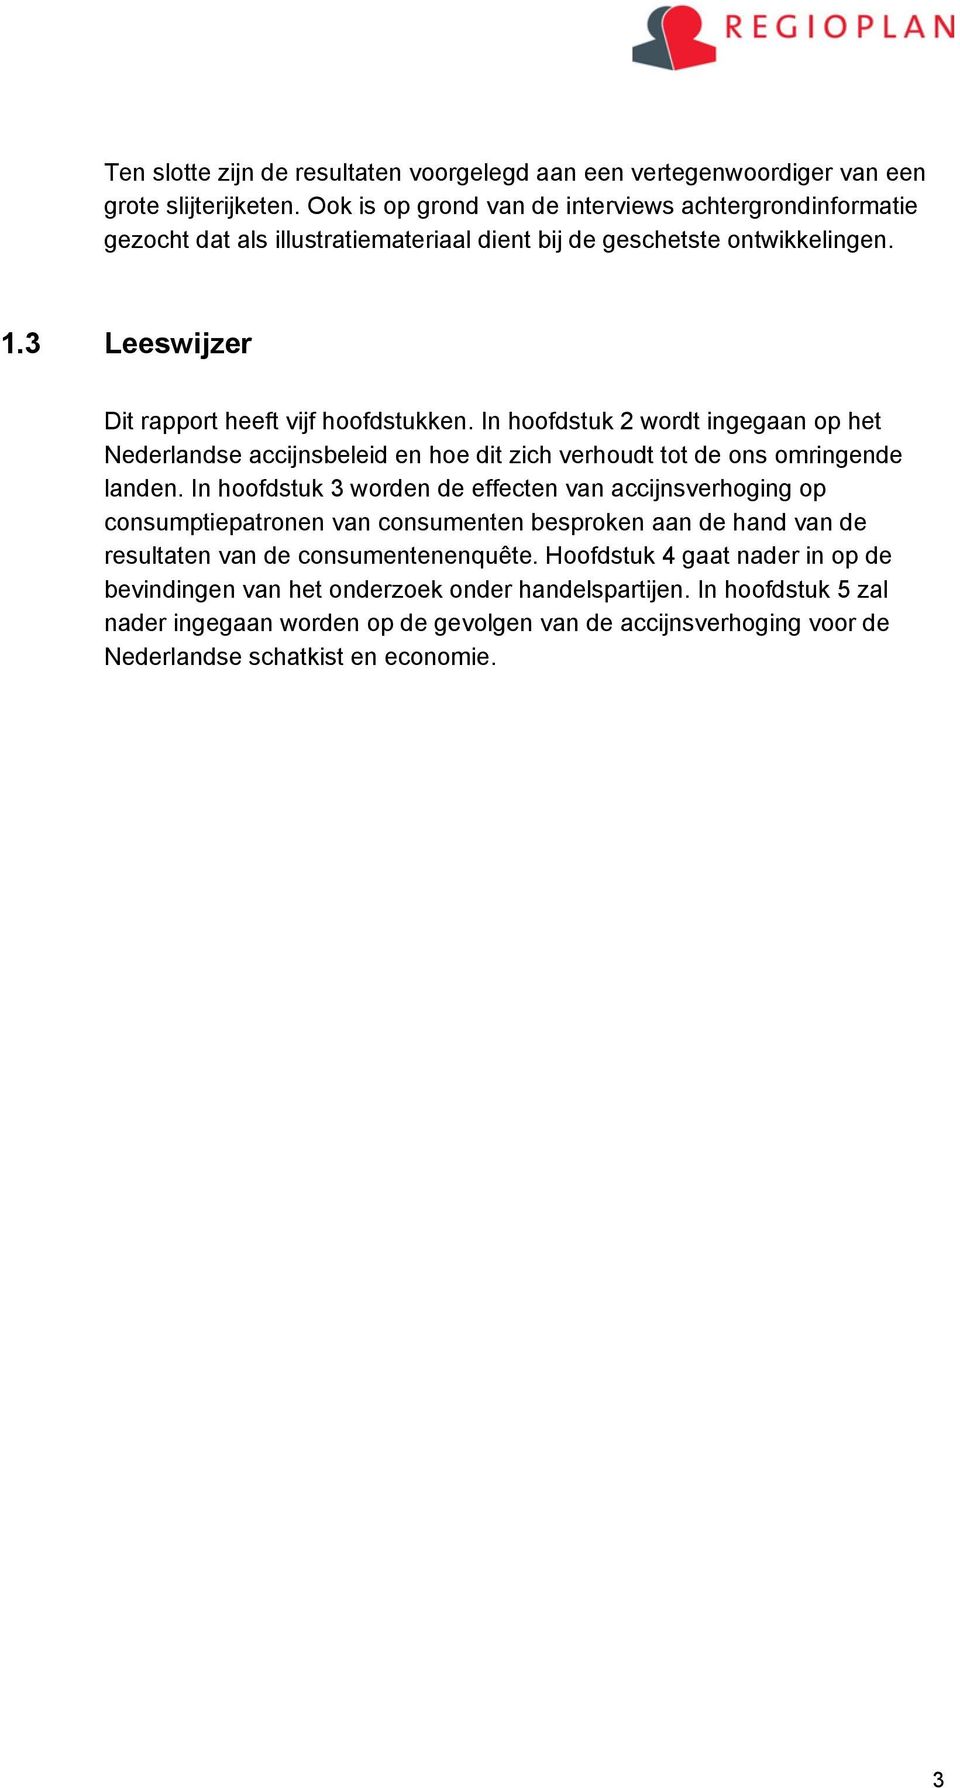 In hoofdstuk 2 wordt ingegaan op het Nederlandse accijnsbeleid en hoe dit zich verhoudt tot de ons omringende landen.